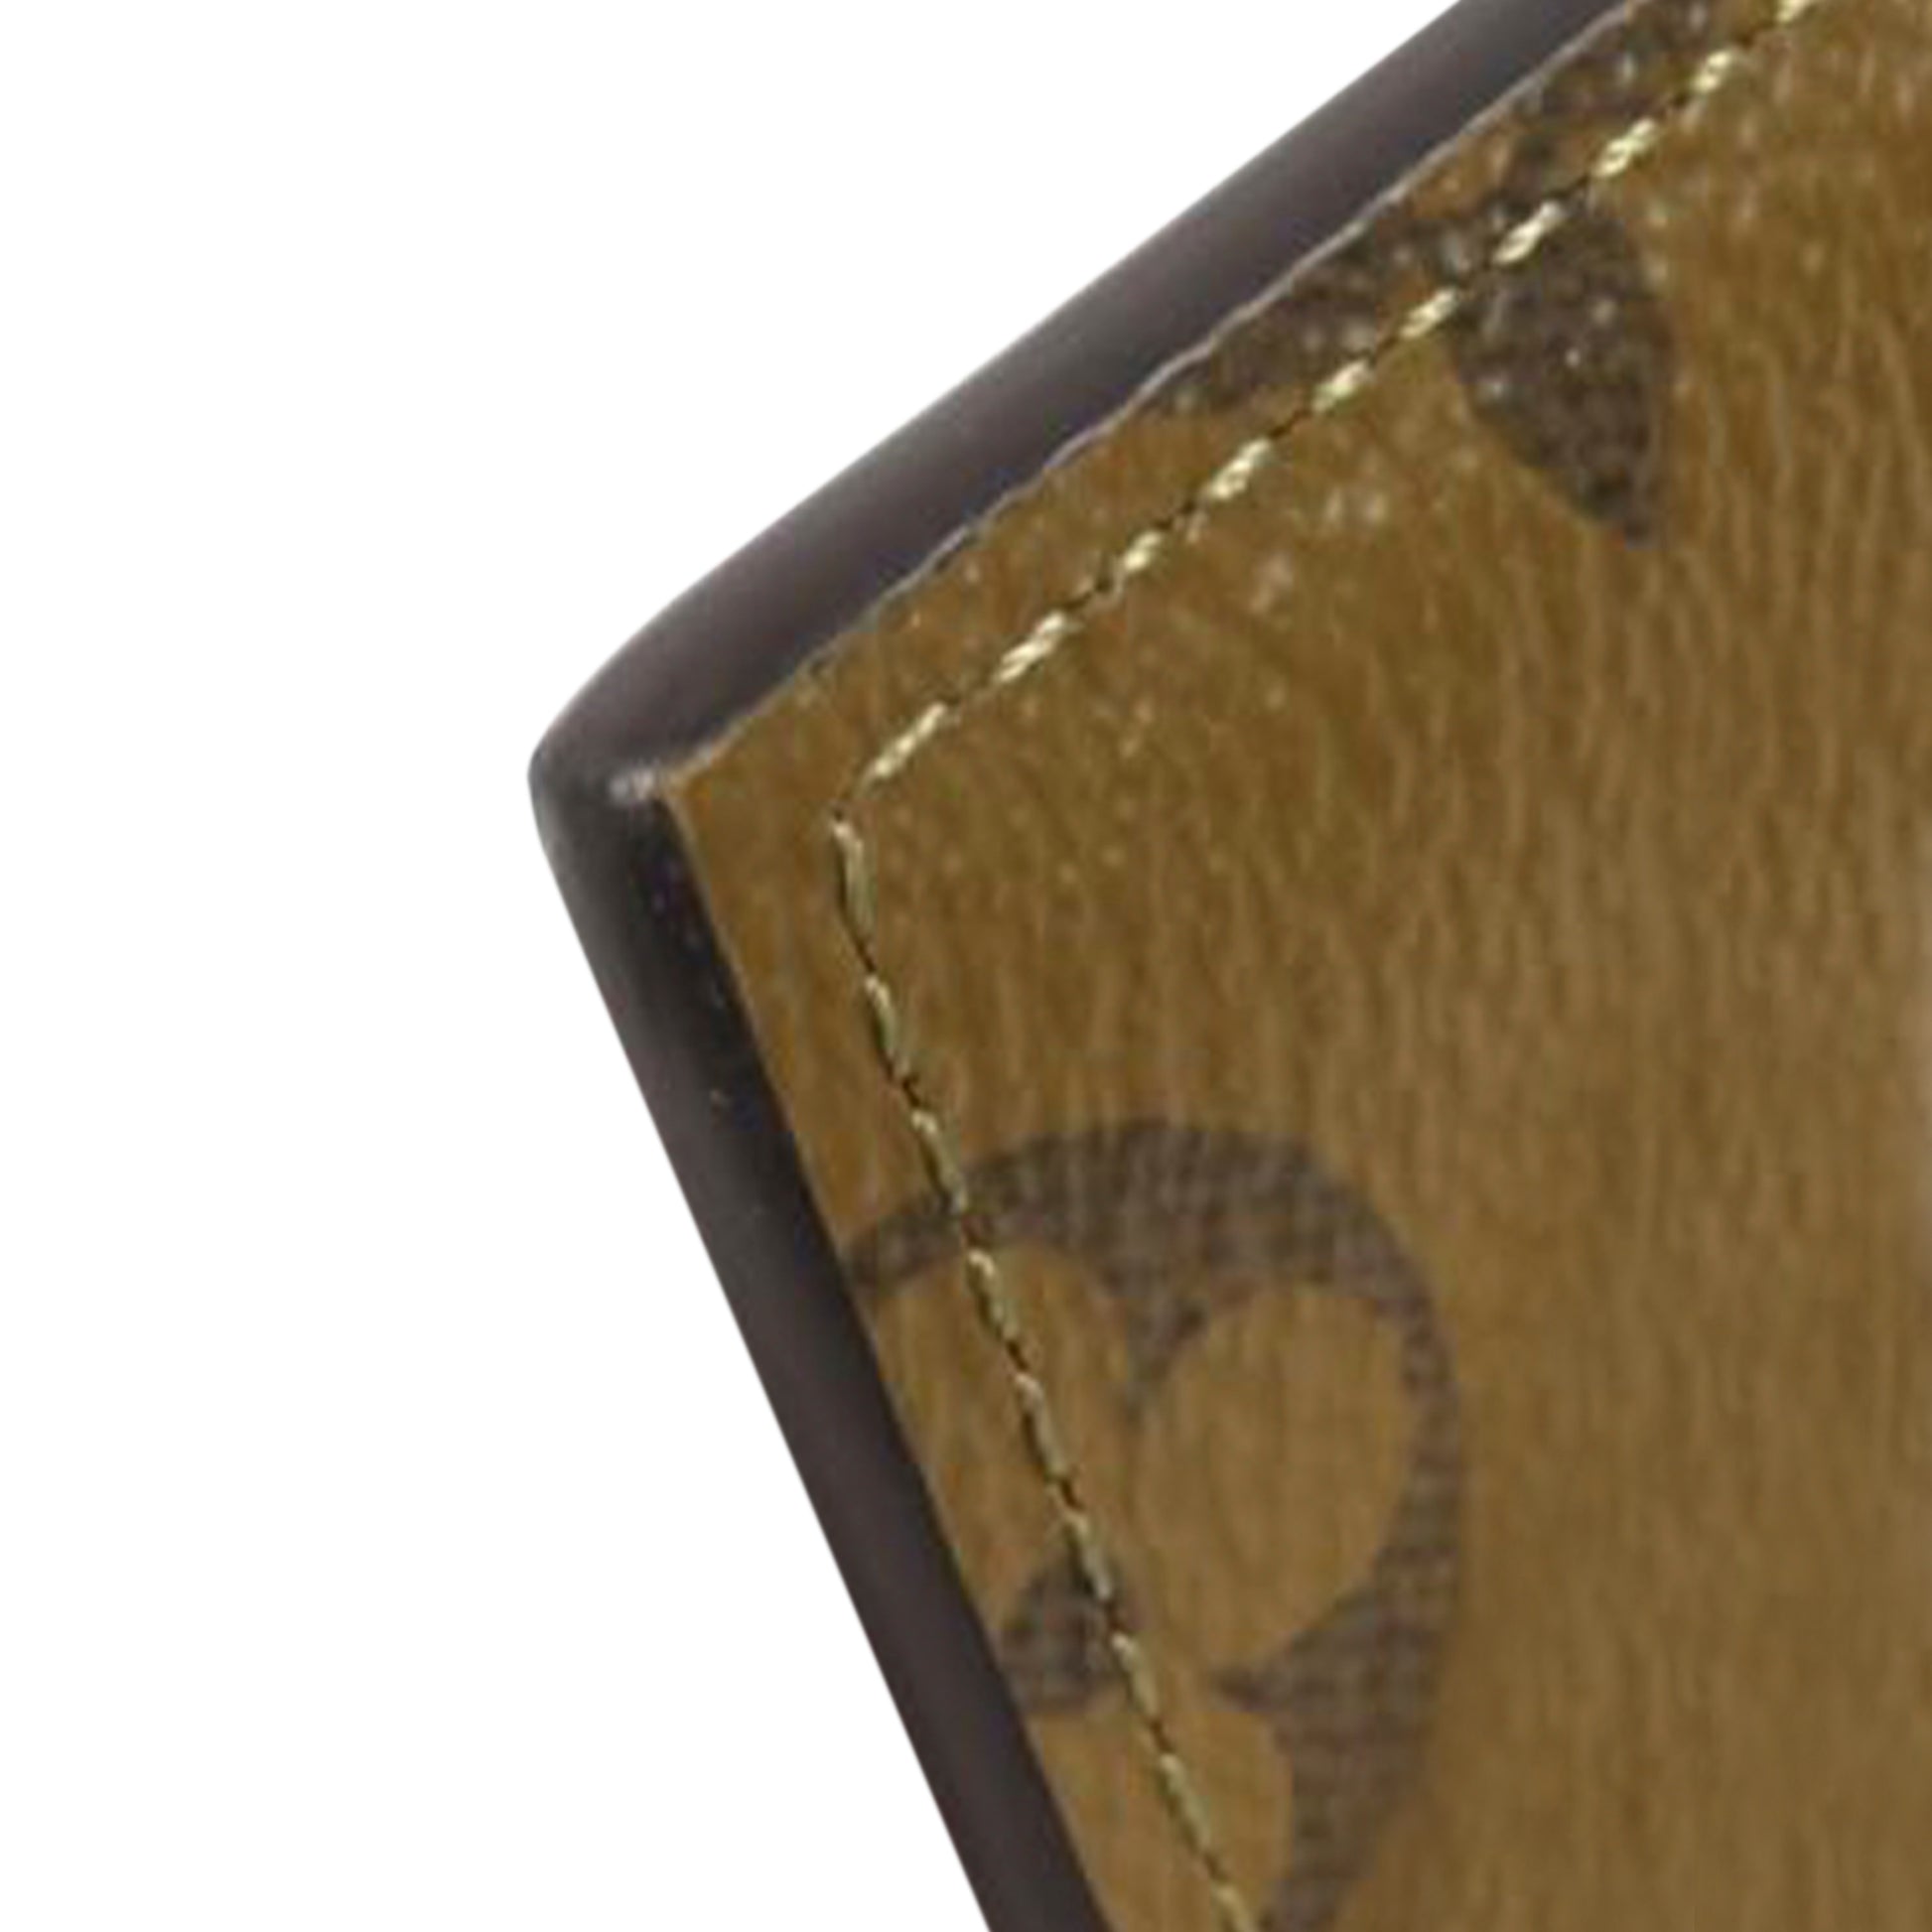 Louis-Vuitton-Monogram-Reverse-Slim-Purse-Card-Case-M80390 – dct